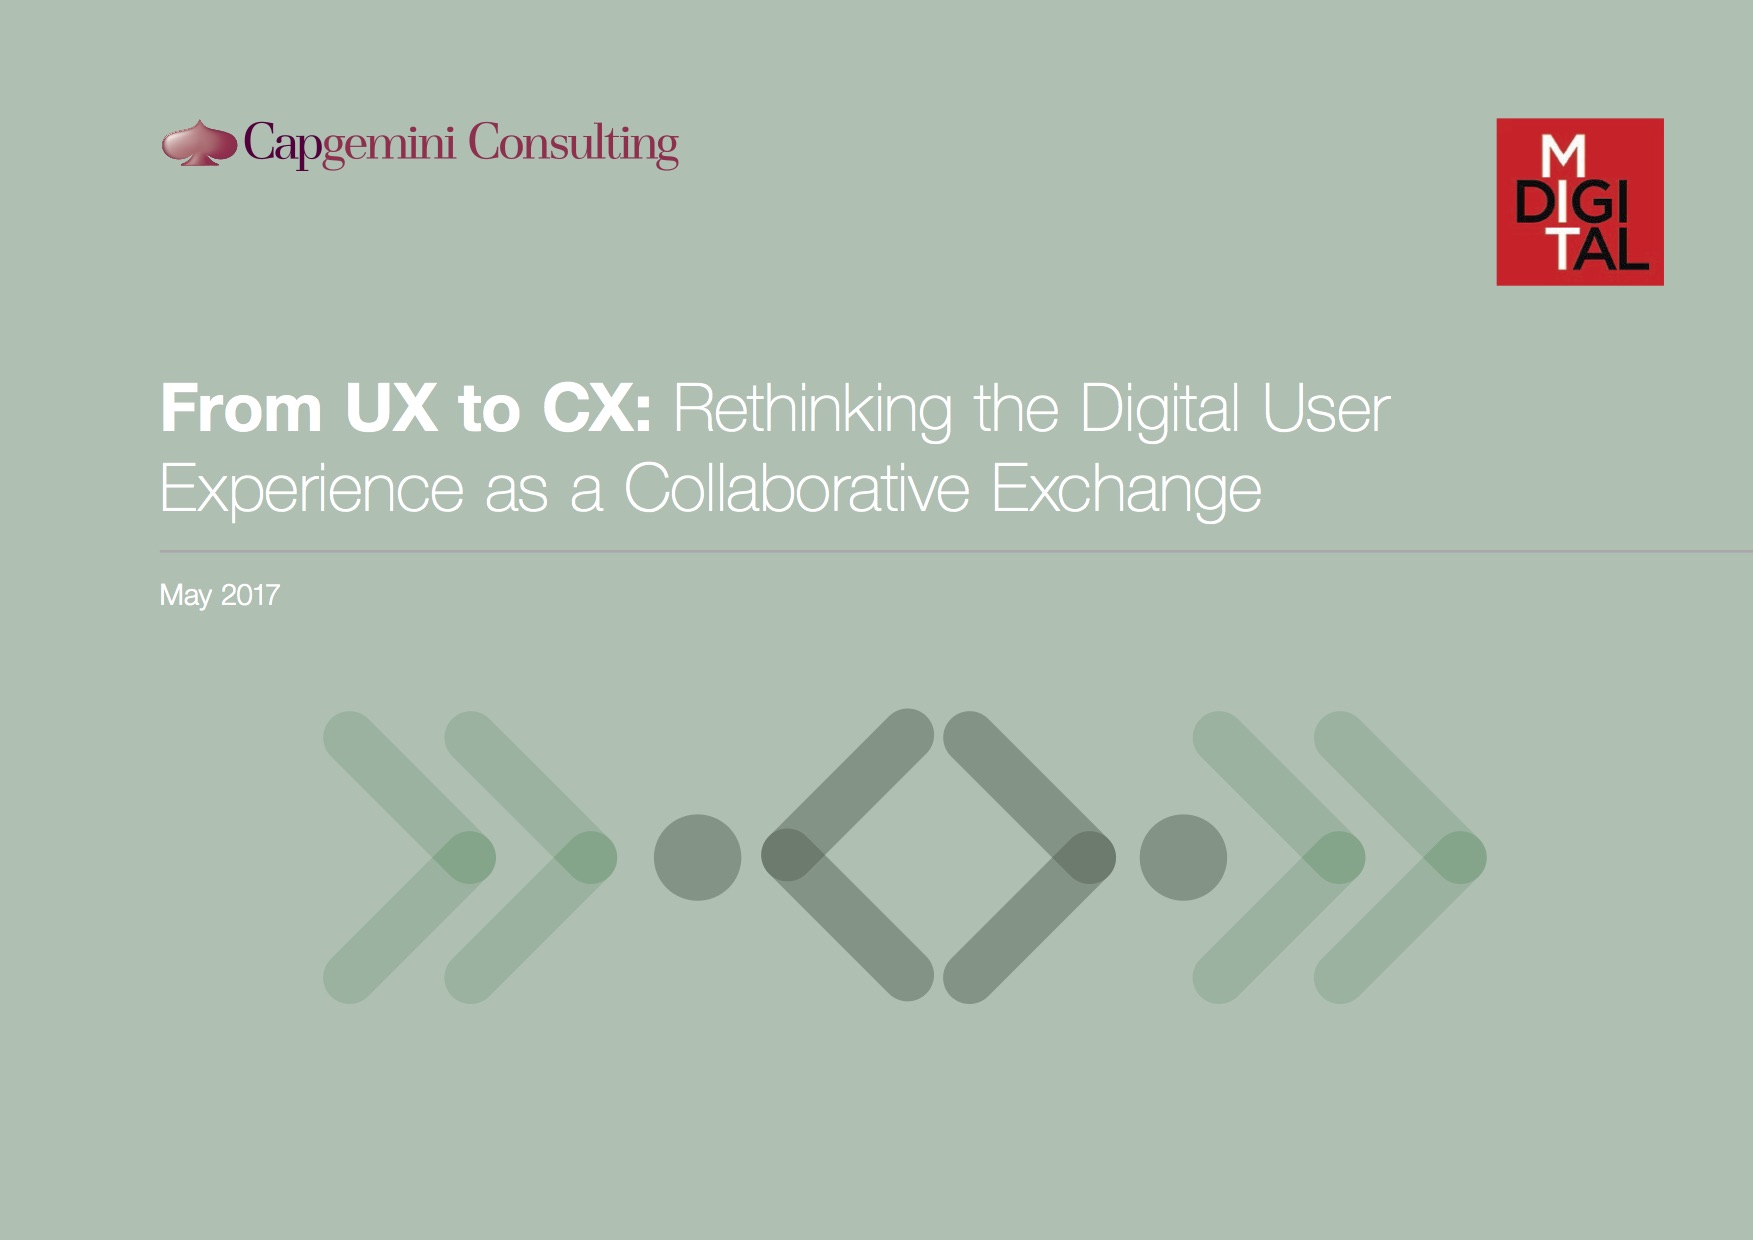 Collaborative Exchange: il nuovo paradigma della Digital CX